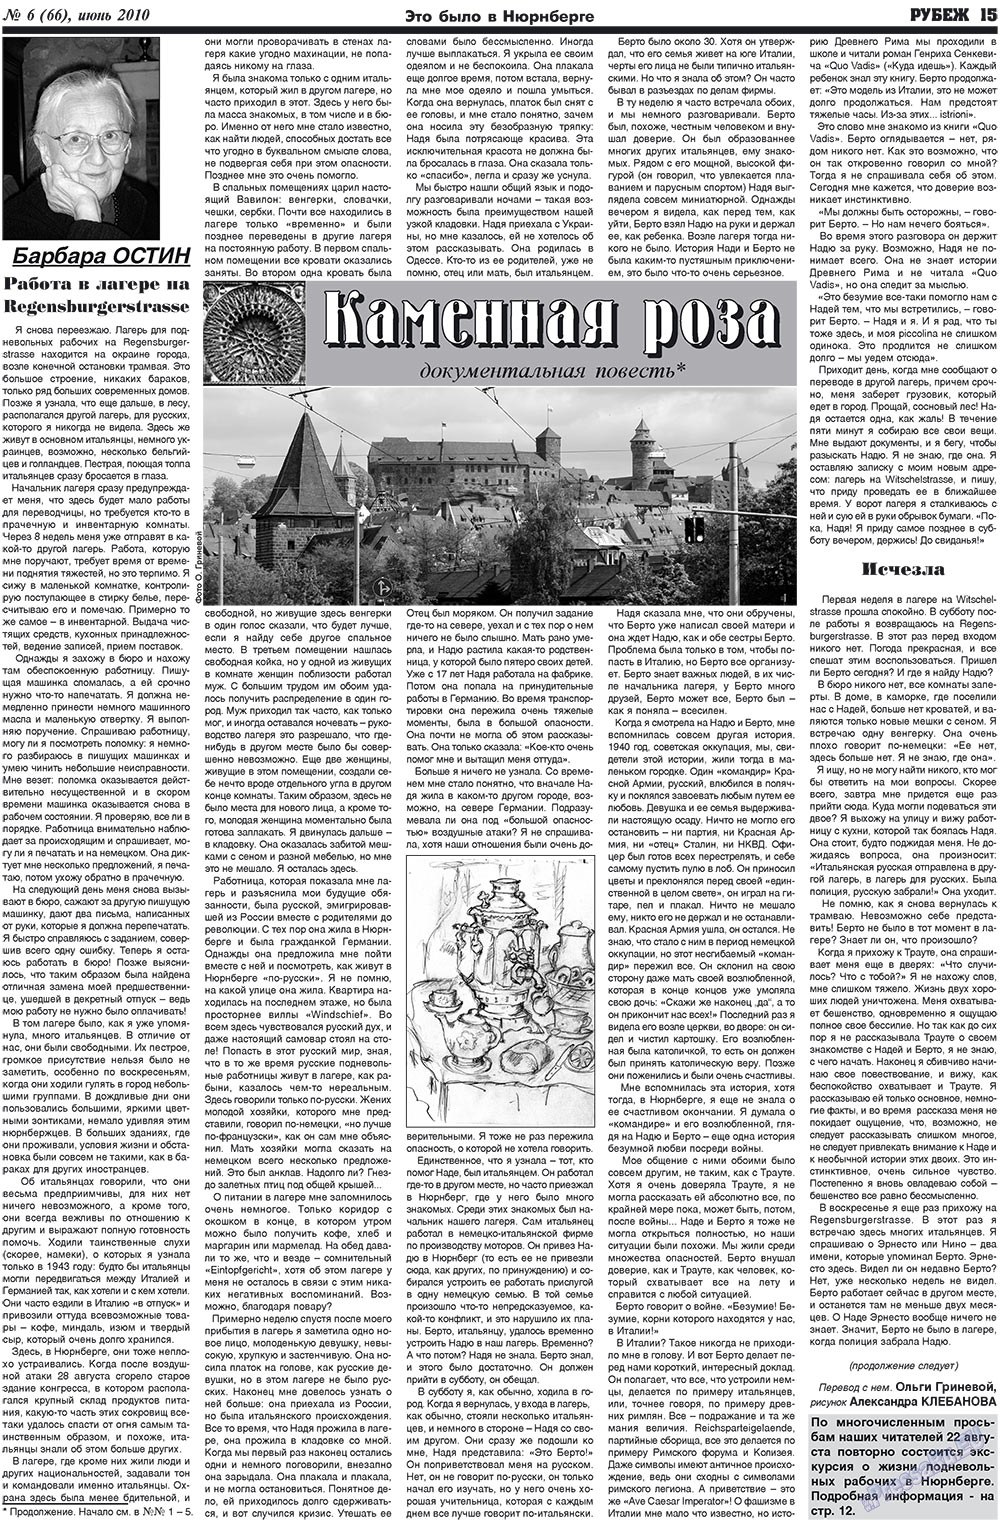 Рубеж (газета). 2010 год, номер 6, стр. 15